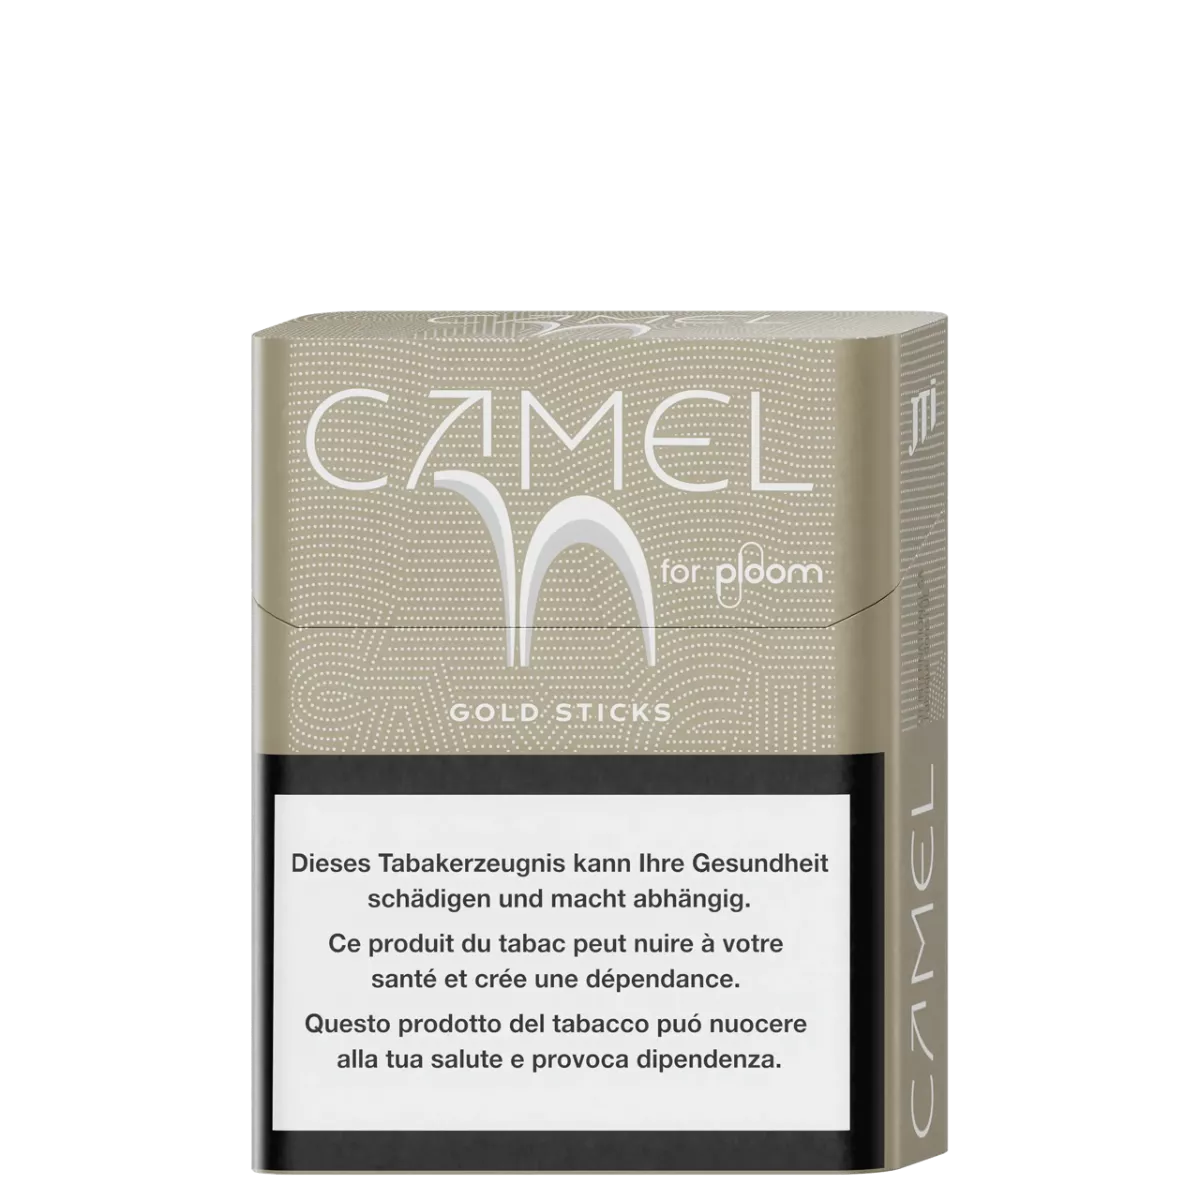 Camel Gold sticks pour ploom X advanced - ccoté droit
